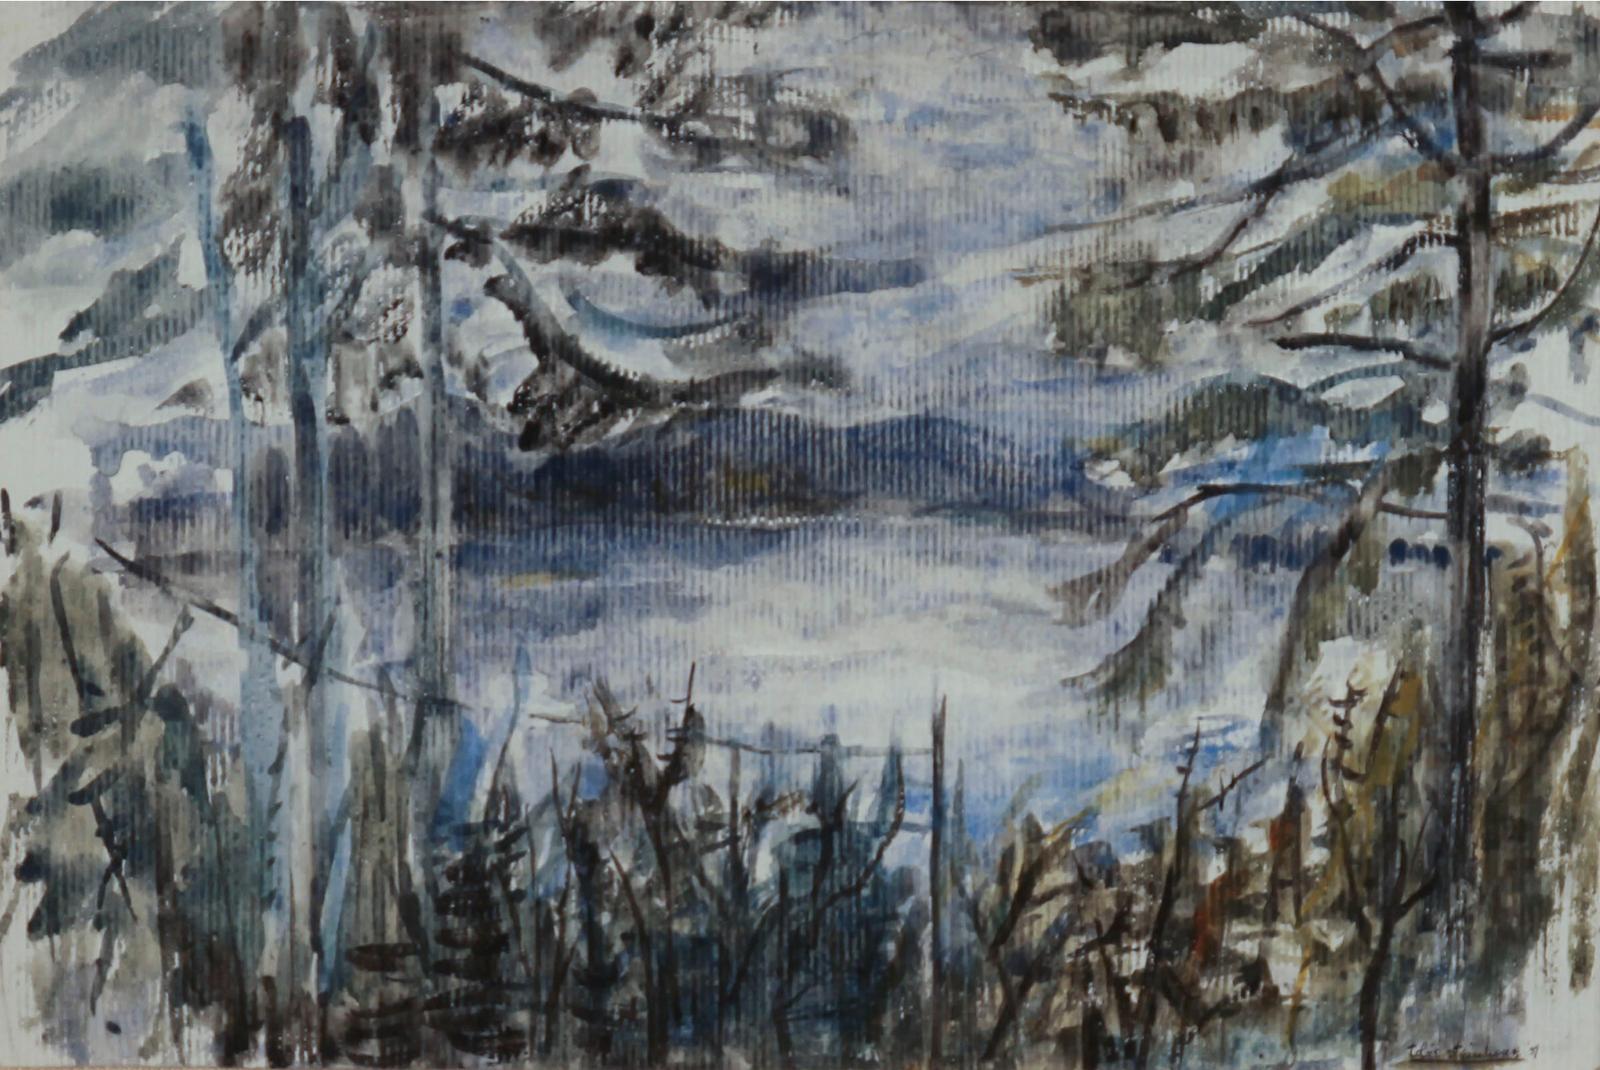 Tobie Thelma Steinhouse (1925) - Storm Coming, Lac Ouareau, Quebec, 1959